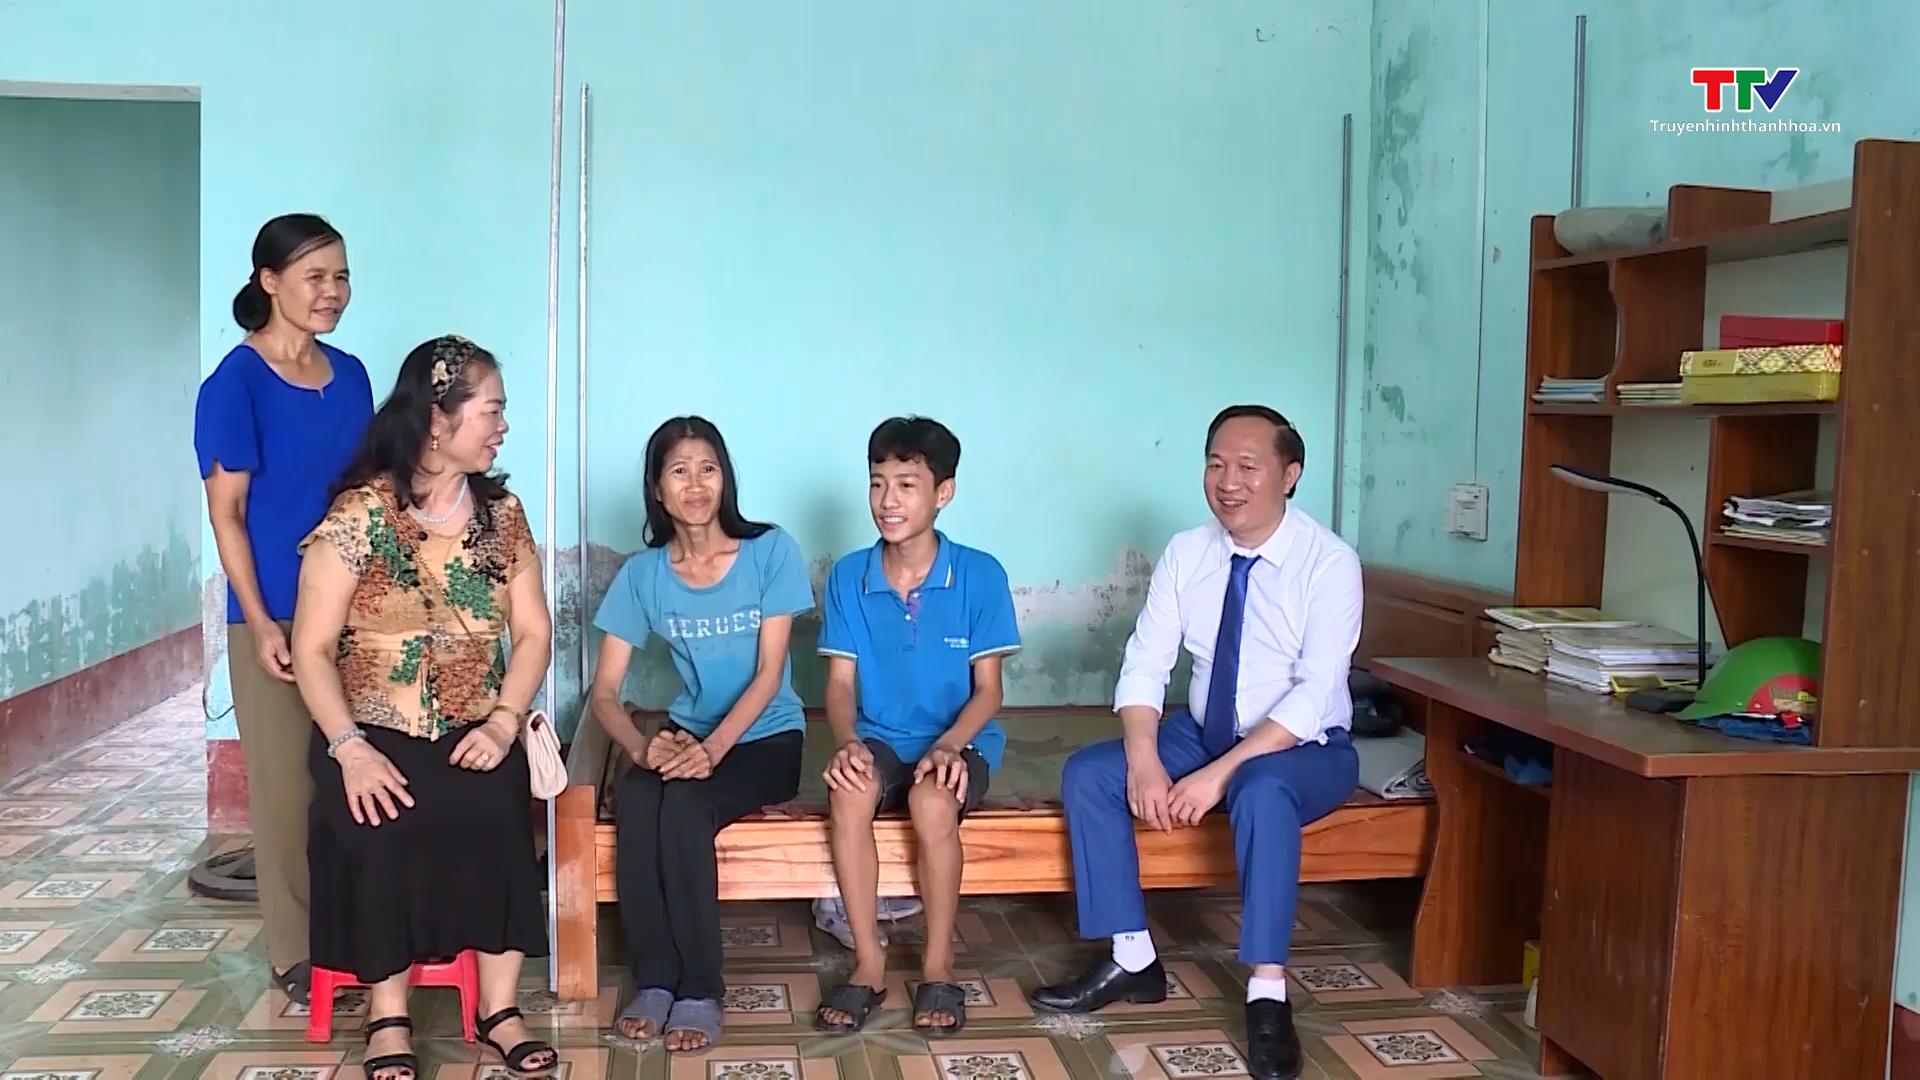 Doanh nhân trẻ tỉnh Thanh Hoá chung sức vì cộng đồng - Ảnh 3.